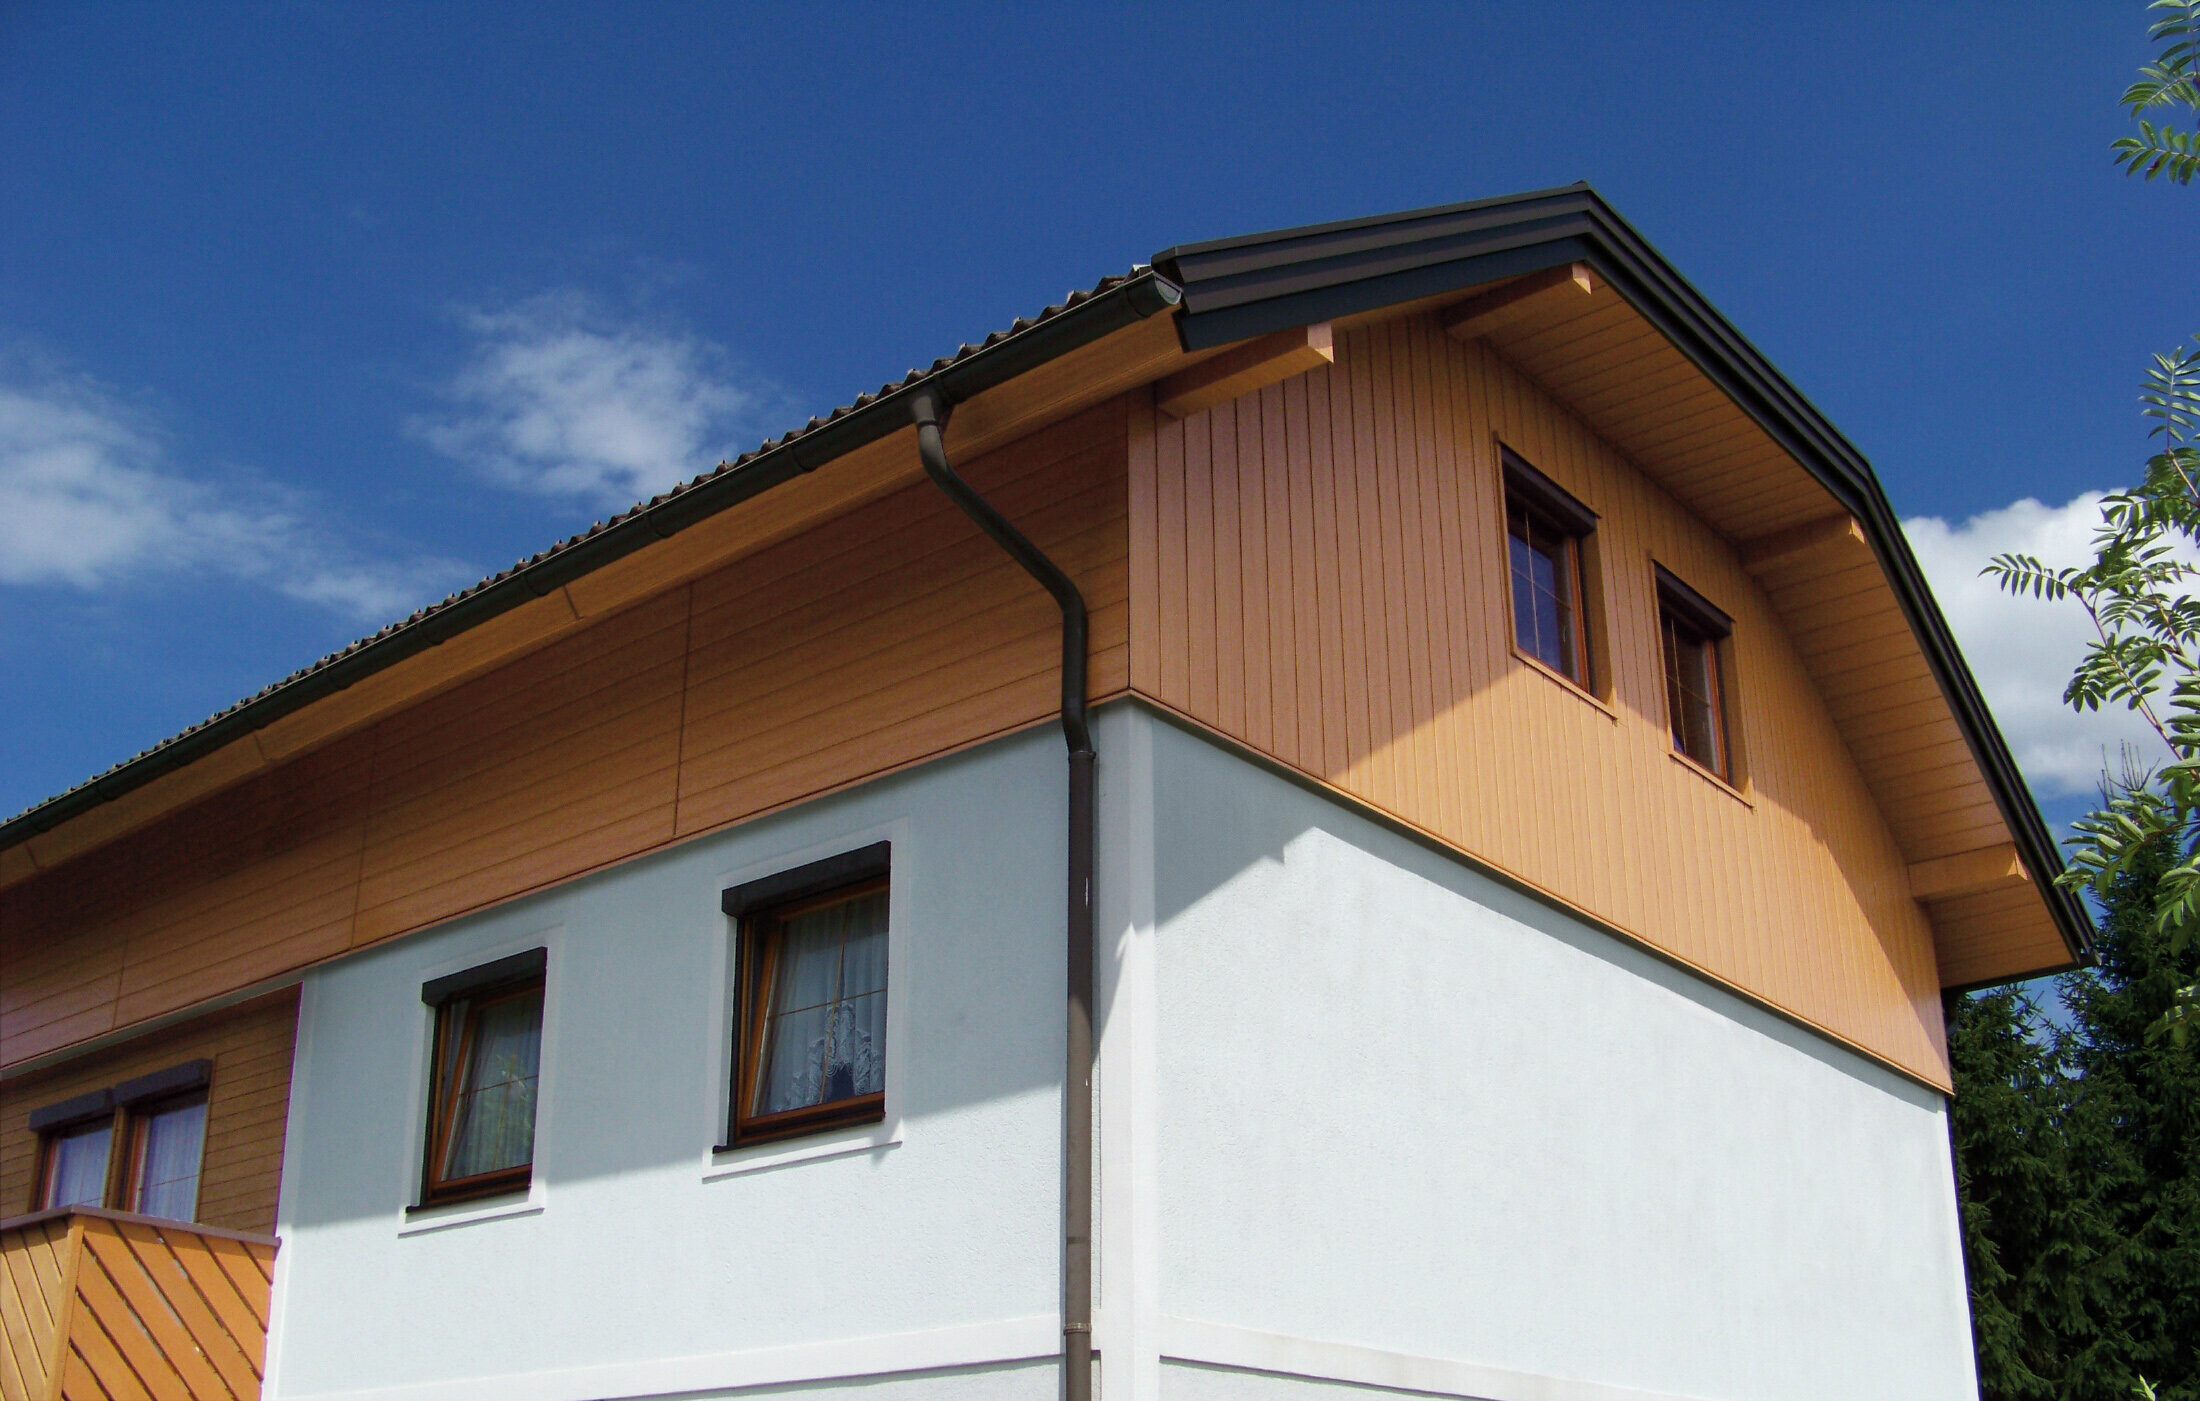 Großes Einfamilienhaus mit Krüppelwalmdach und einer Giebelverkleigung mit den PREFA Sidings in Holzoptik (Farbe Eiche natur)